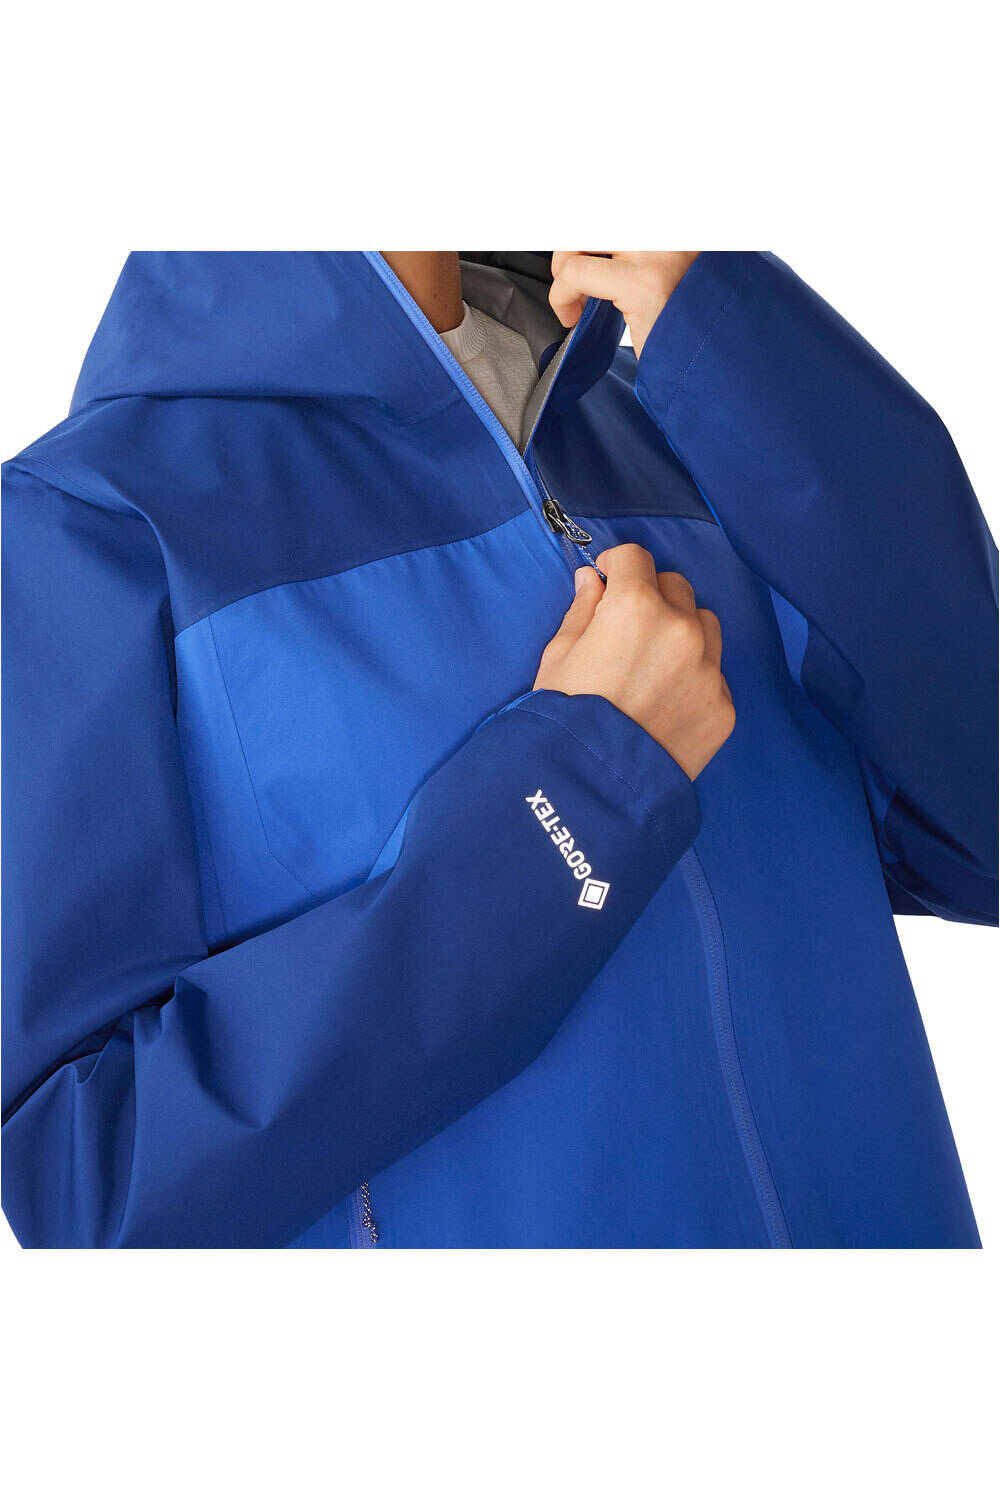 Salomon chaqueta impermeable mujer OUTLINE GTX 2.5L JKT W vista detalle